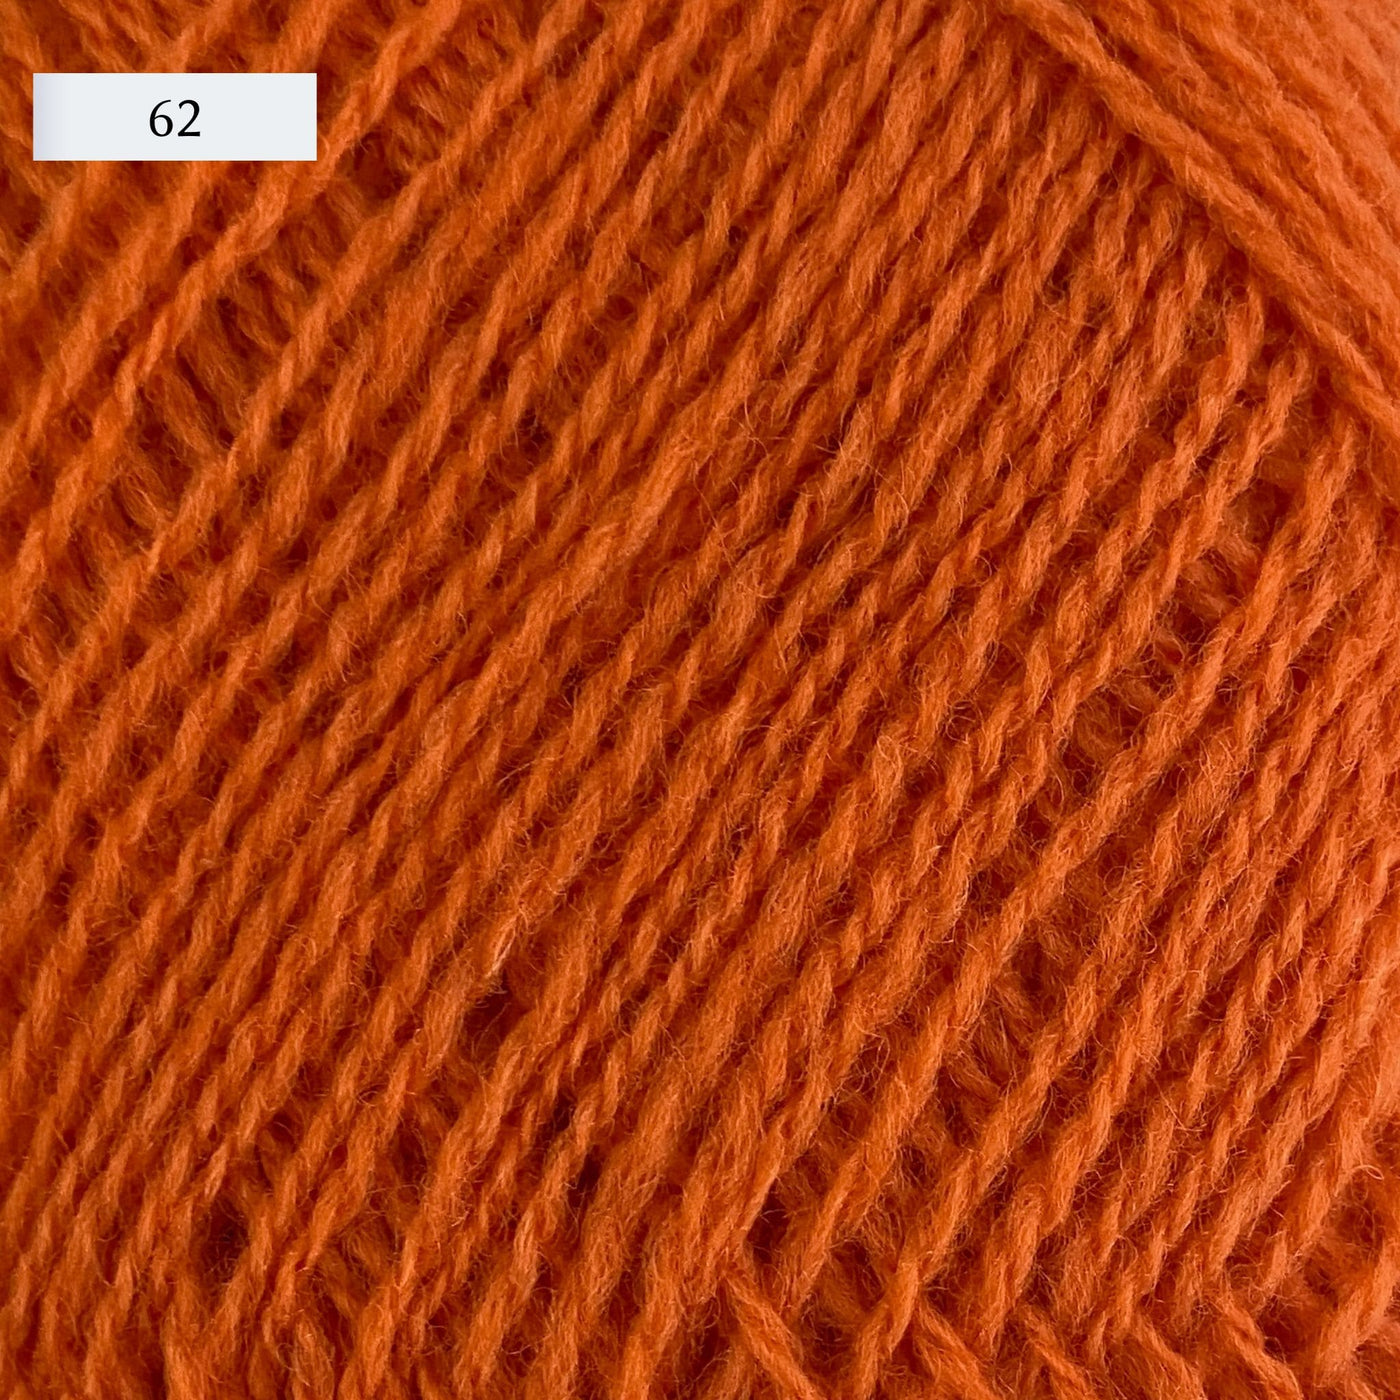 Rauma Lamullgarn, a fingering weight yarn, in color 62, a bright pumpkin orange